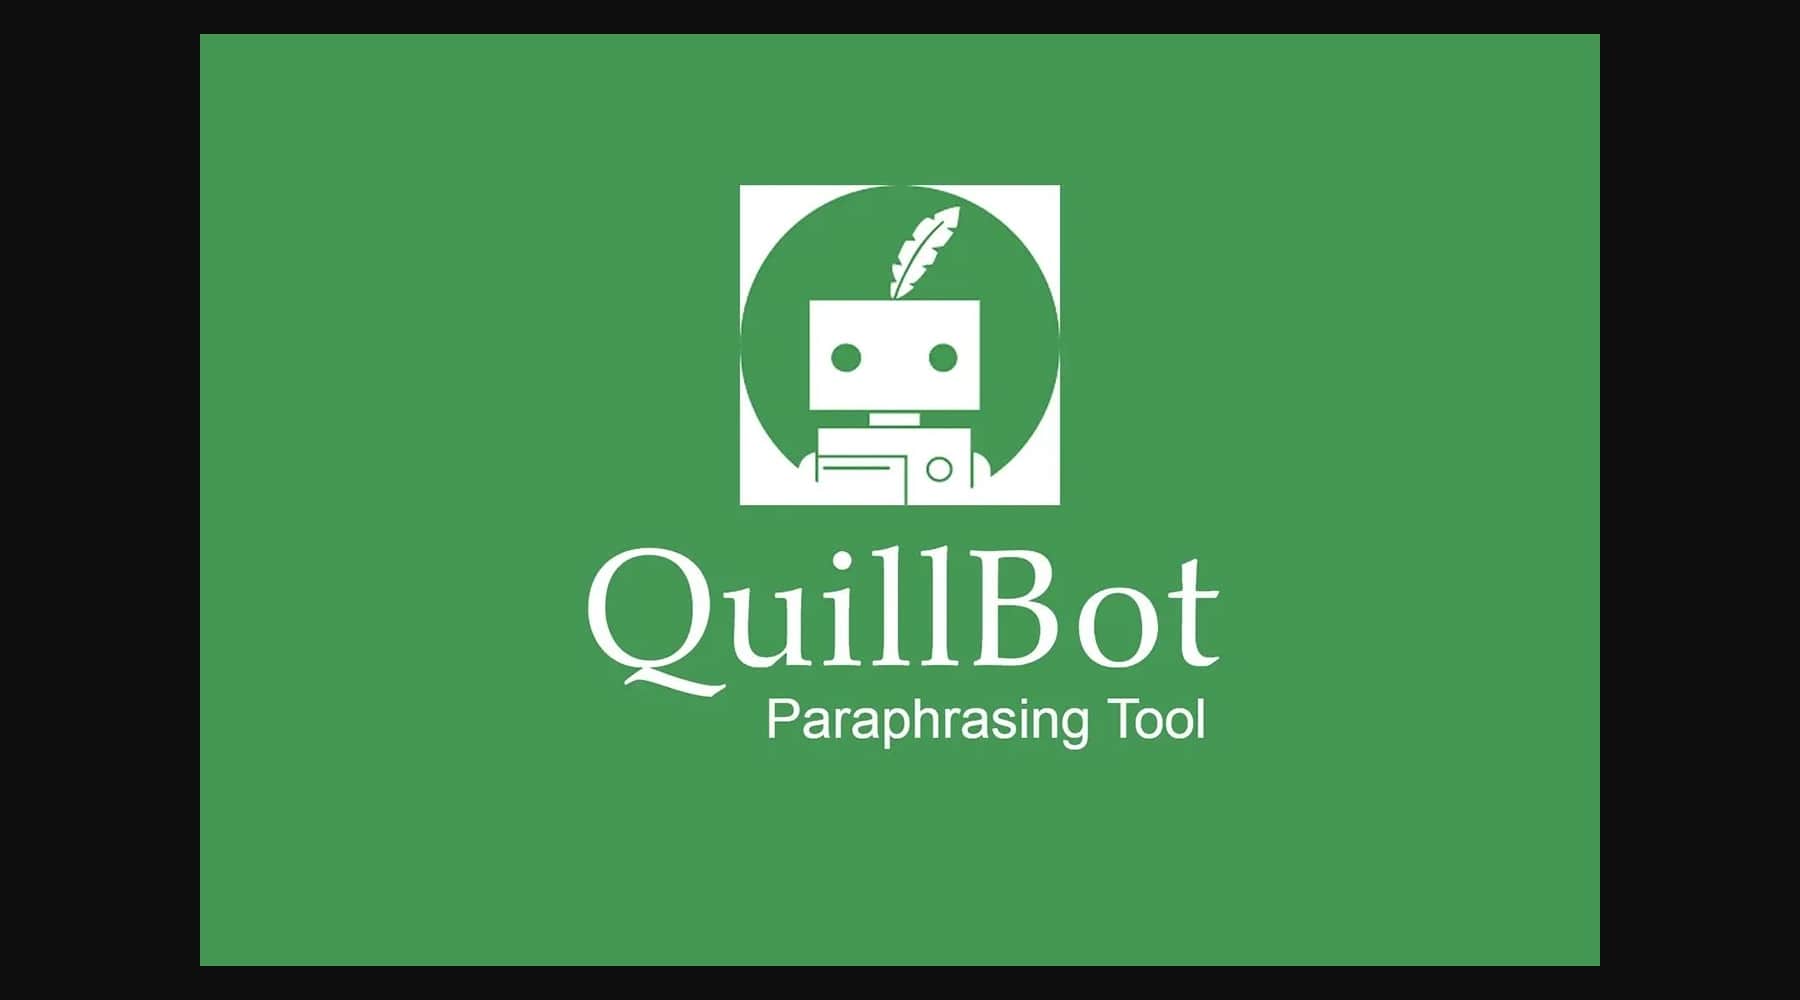 ferramentas de IA quillbot para educação